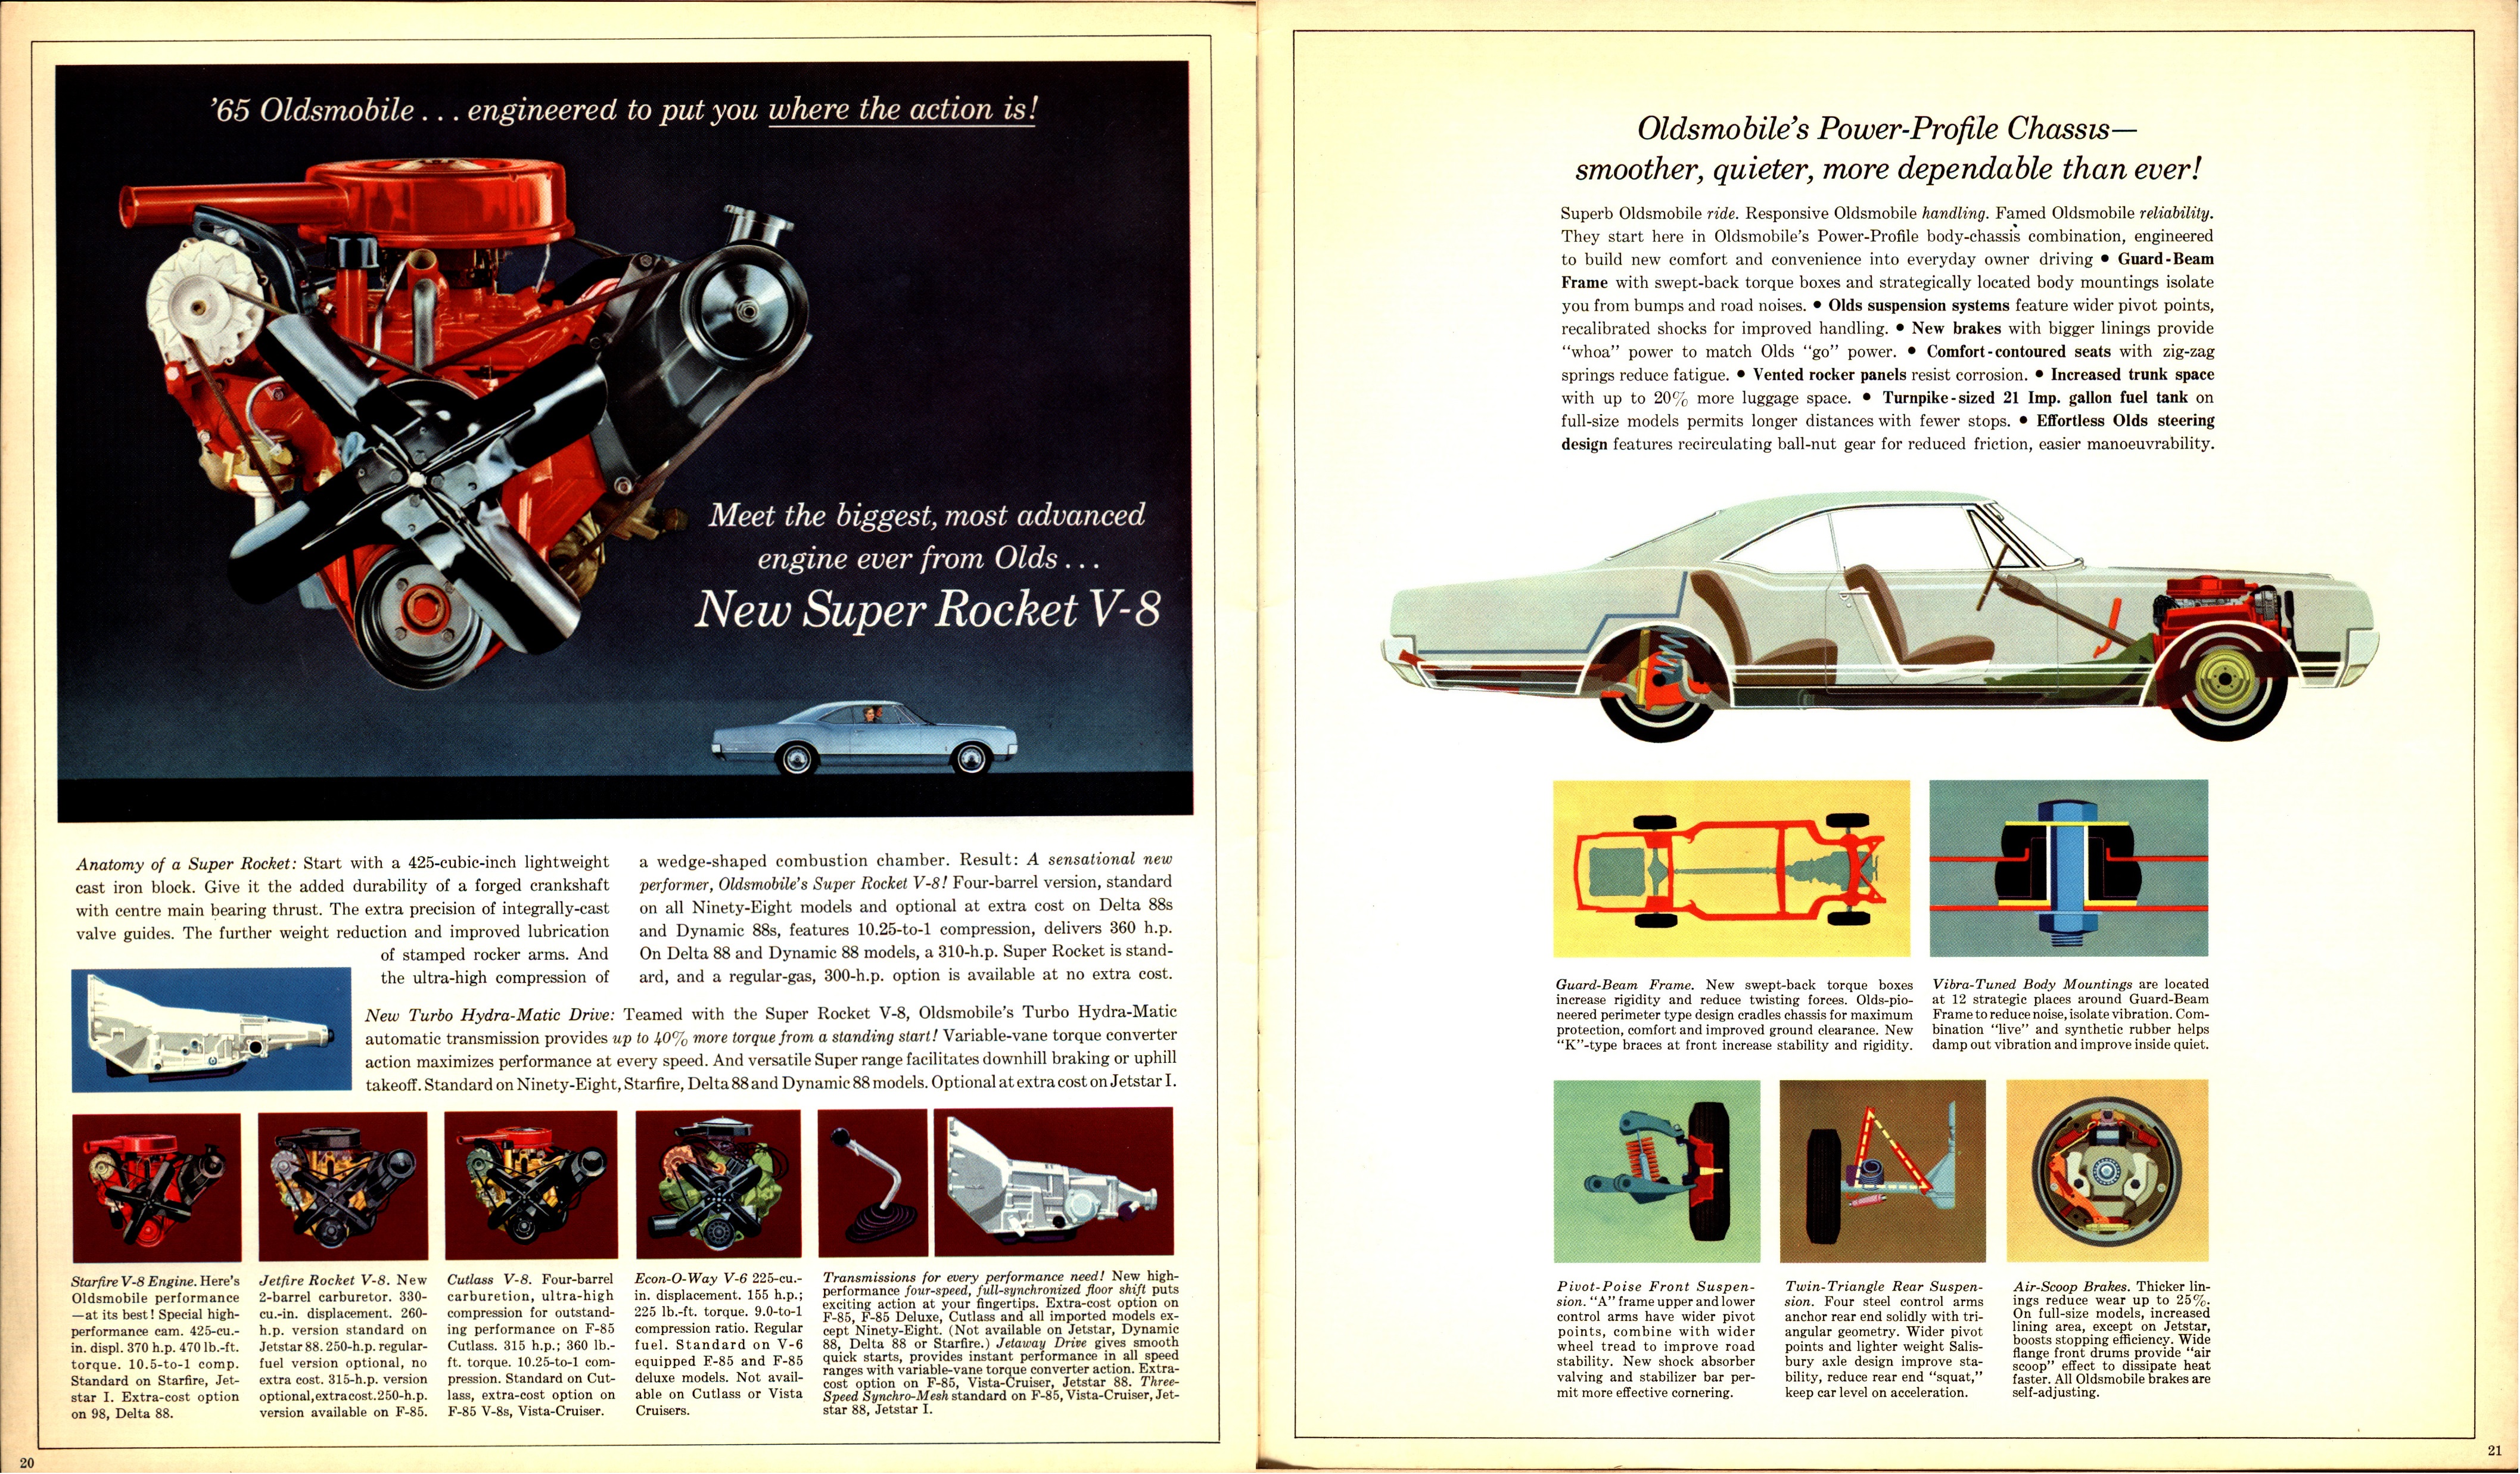 1965 Oldsmobile Full Line Brochure (Cdn) 20-21